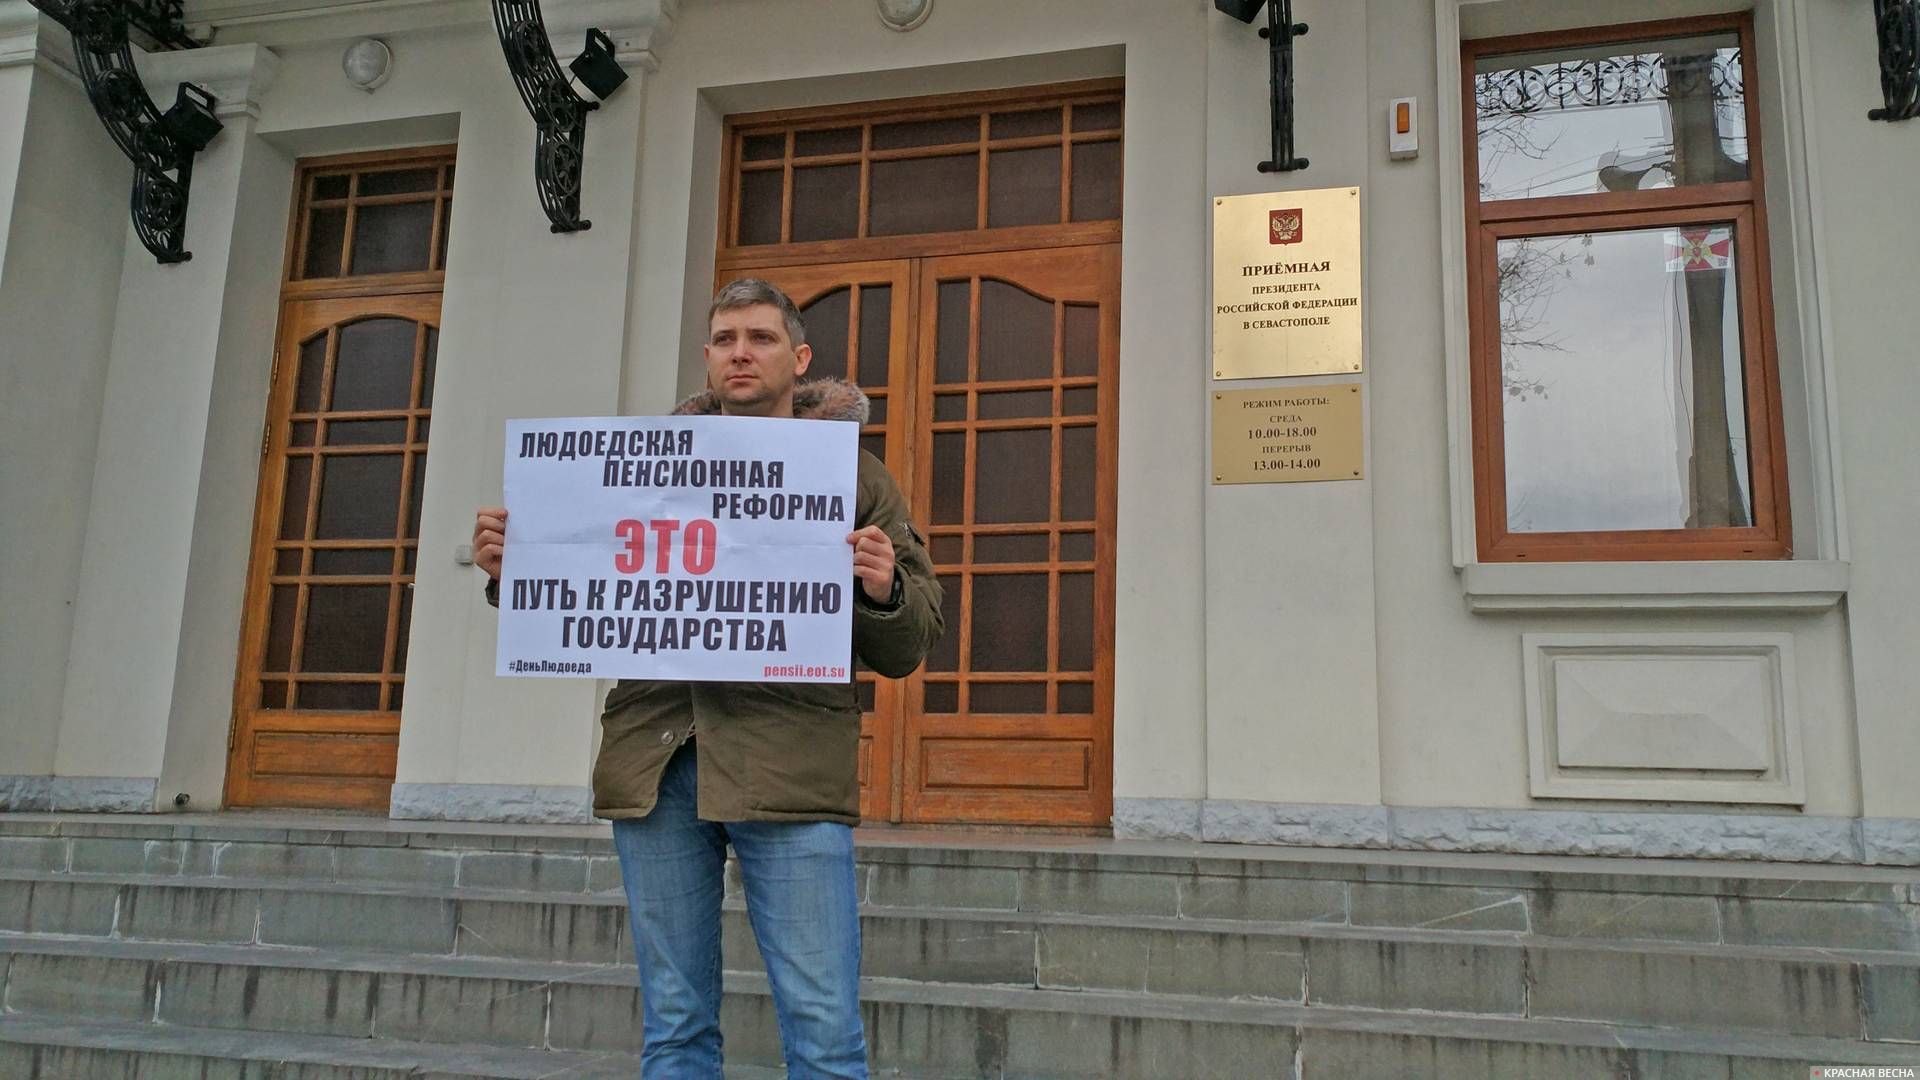 Пикет против пенсионной реформы в Севастополе 3 января 2019 года